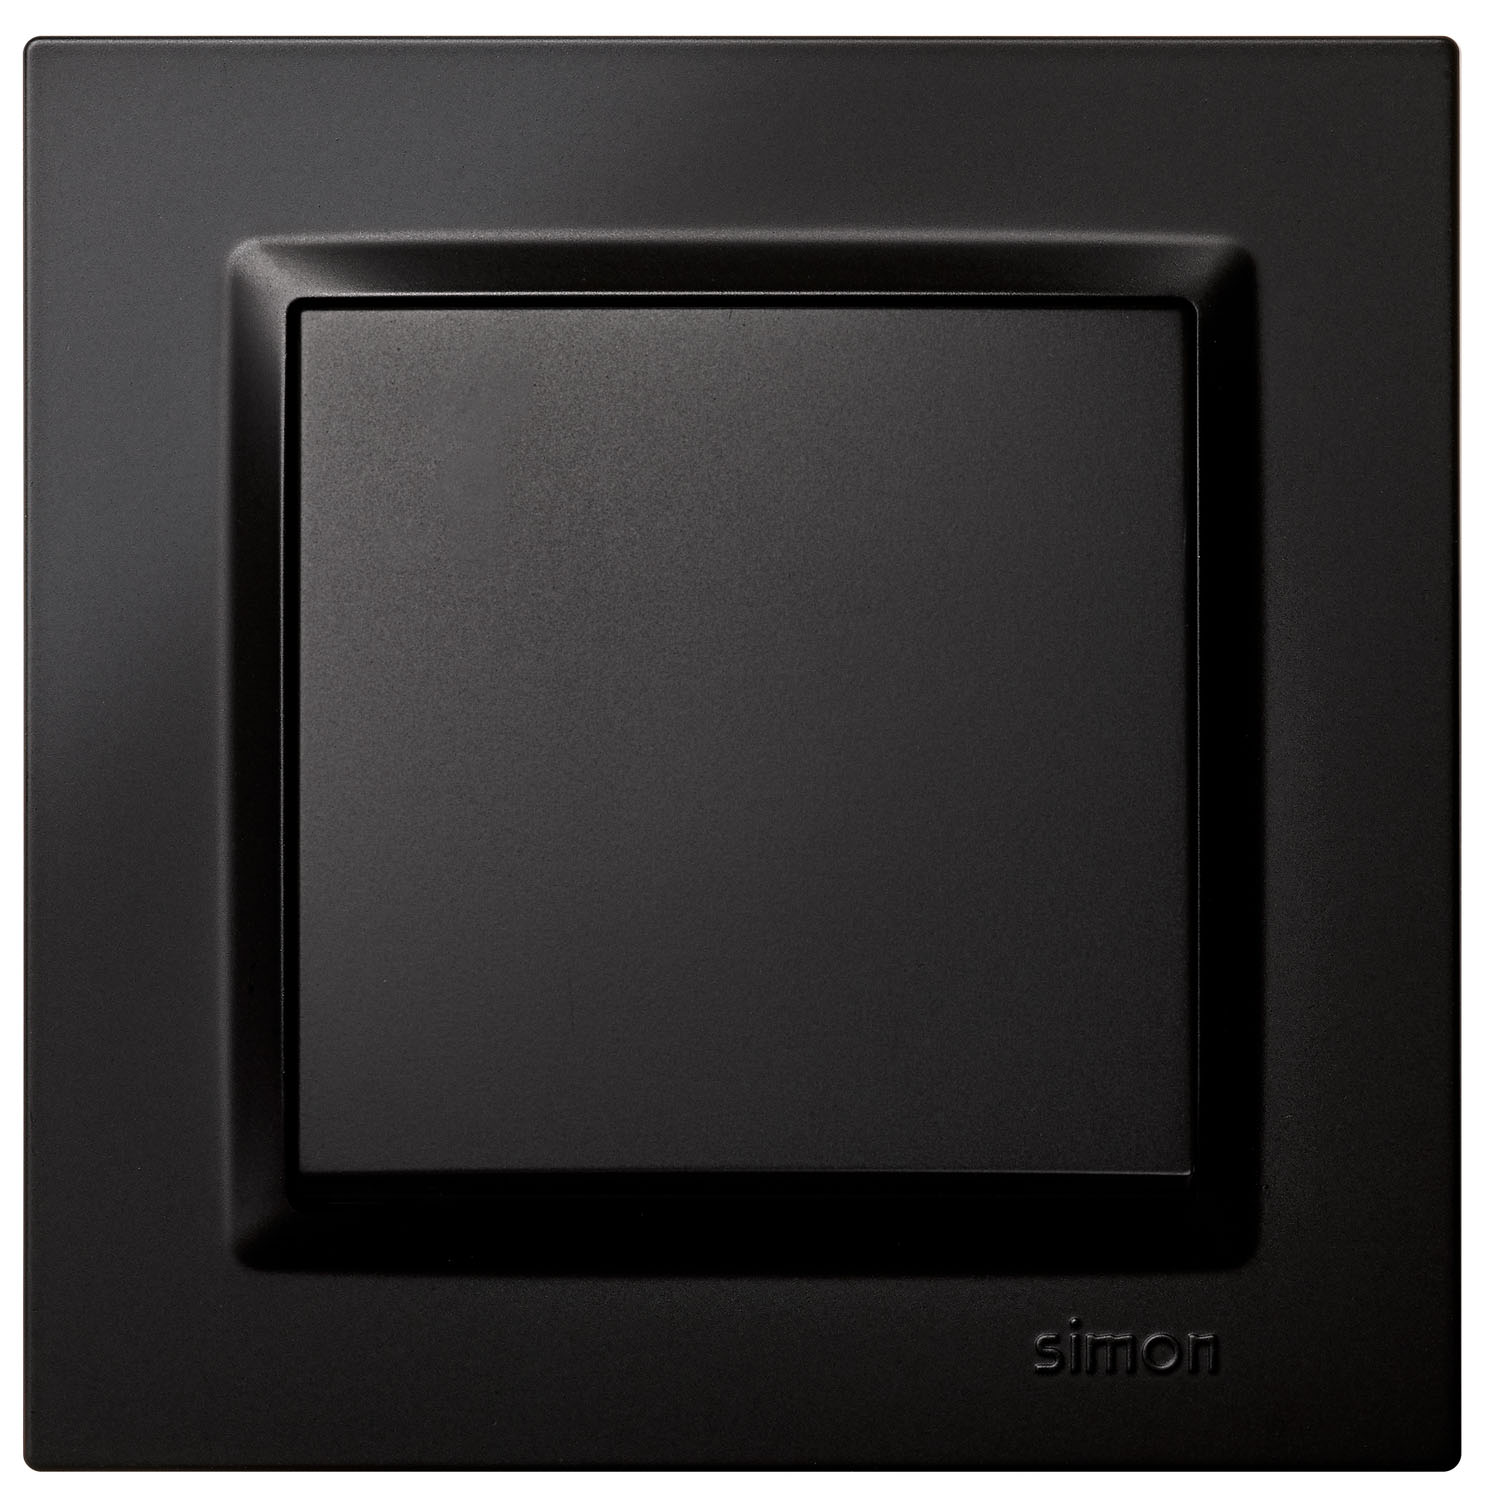 Interruptor SIMON 82 doble con embornamiento rápido+tecla 10AX negro mate -  Guarconsa - Distribuidor de material eléctrico líder en Madrid